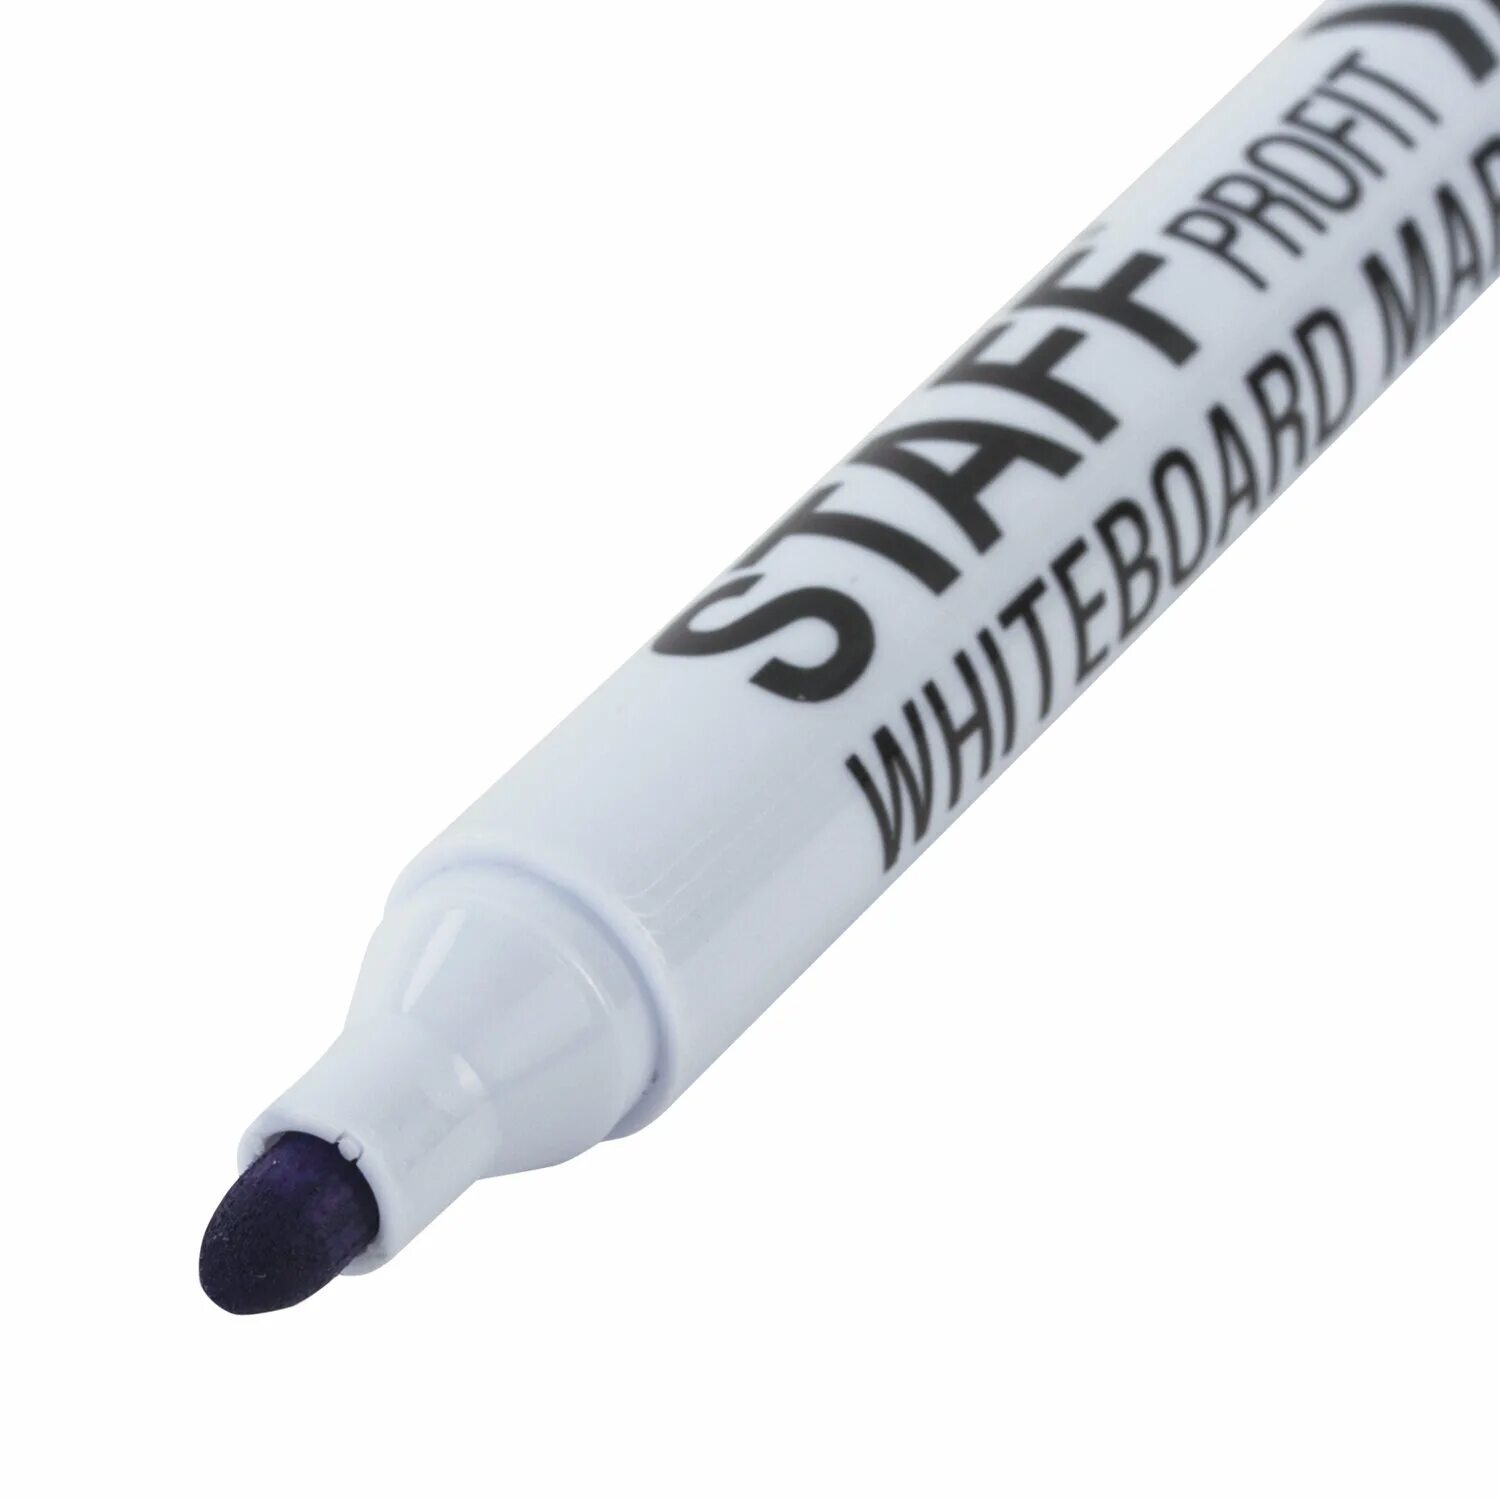 Купить стираемые маркеры. Staff маркер Basic, черный. Маркеры стираемые для белой доски набор 4цвета staff WBD-644 2.5мм. Белый маркер. Маркеры для доски стирающиеся стафф.